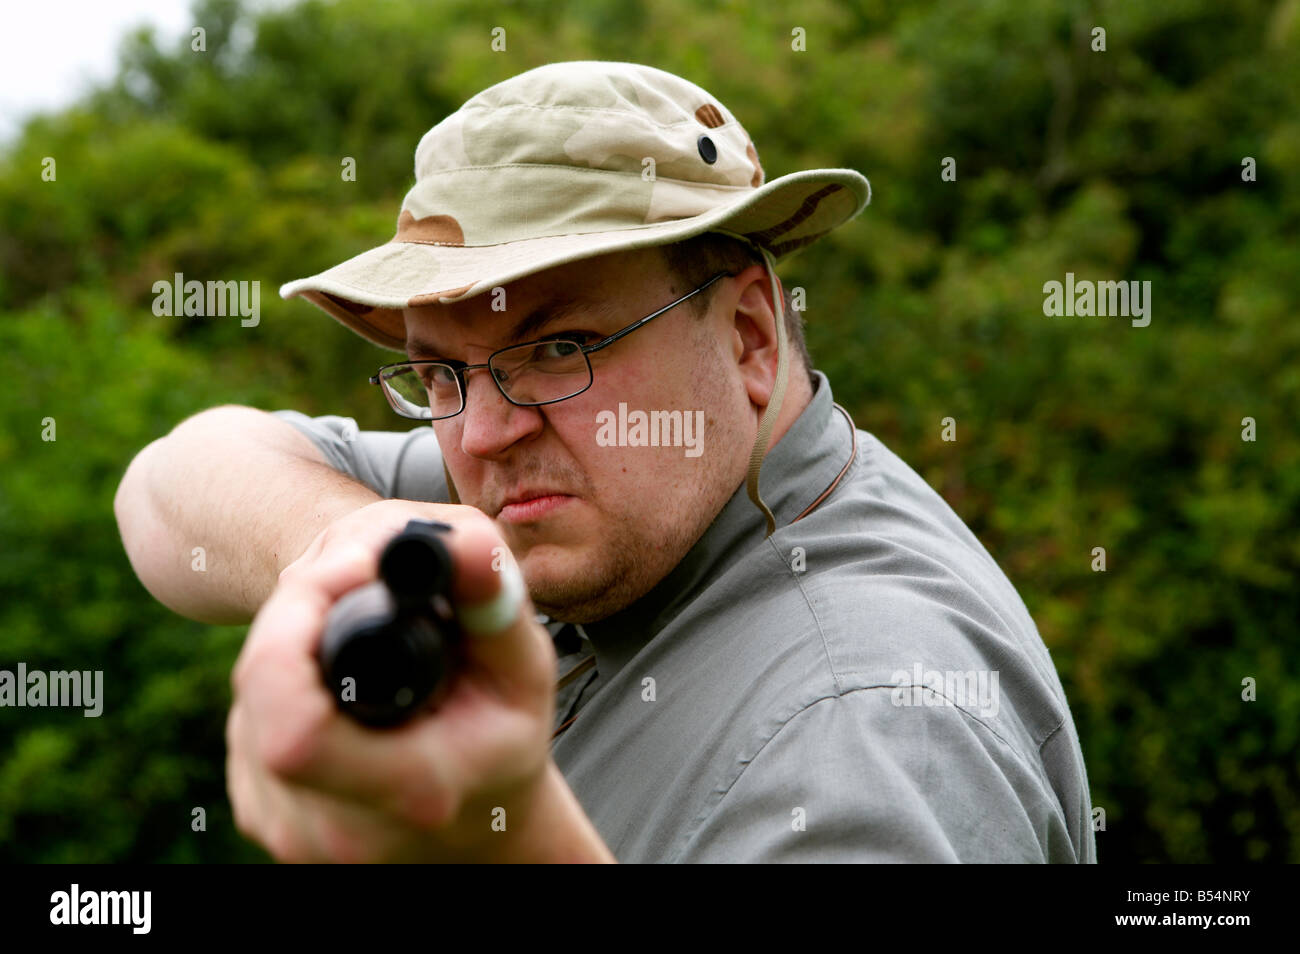 Un hombre apunta una pistola disparó Foto de stock